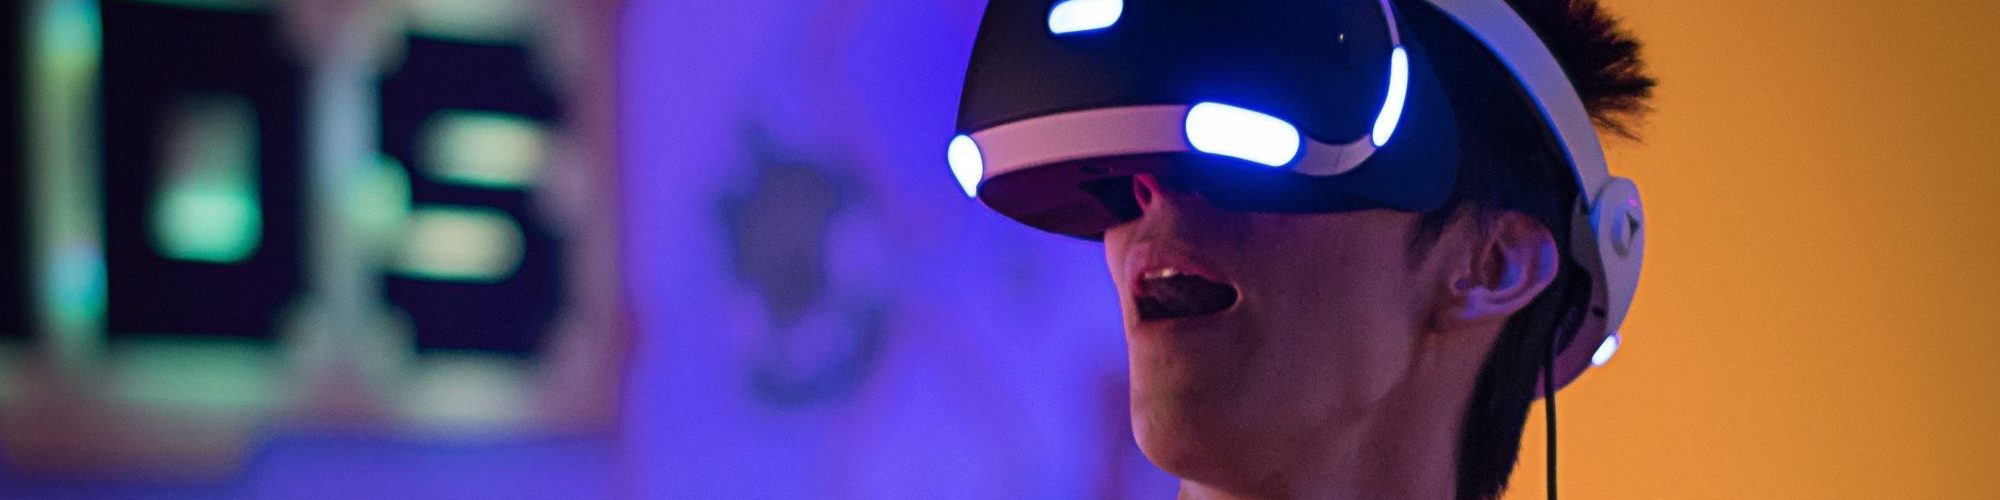 Jeune homme teste la realite virtuelle au chateau Vaillant internat college lycee esport